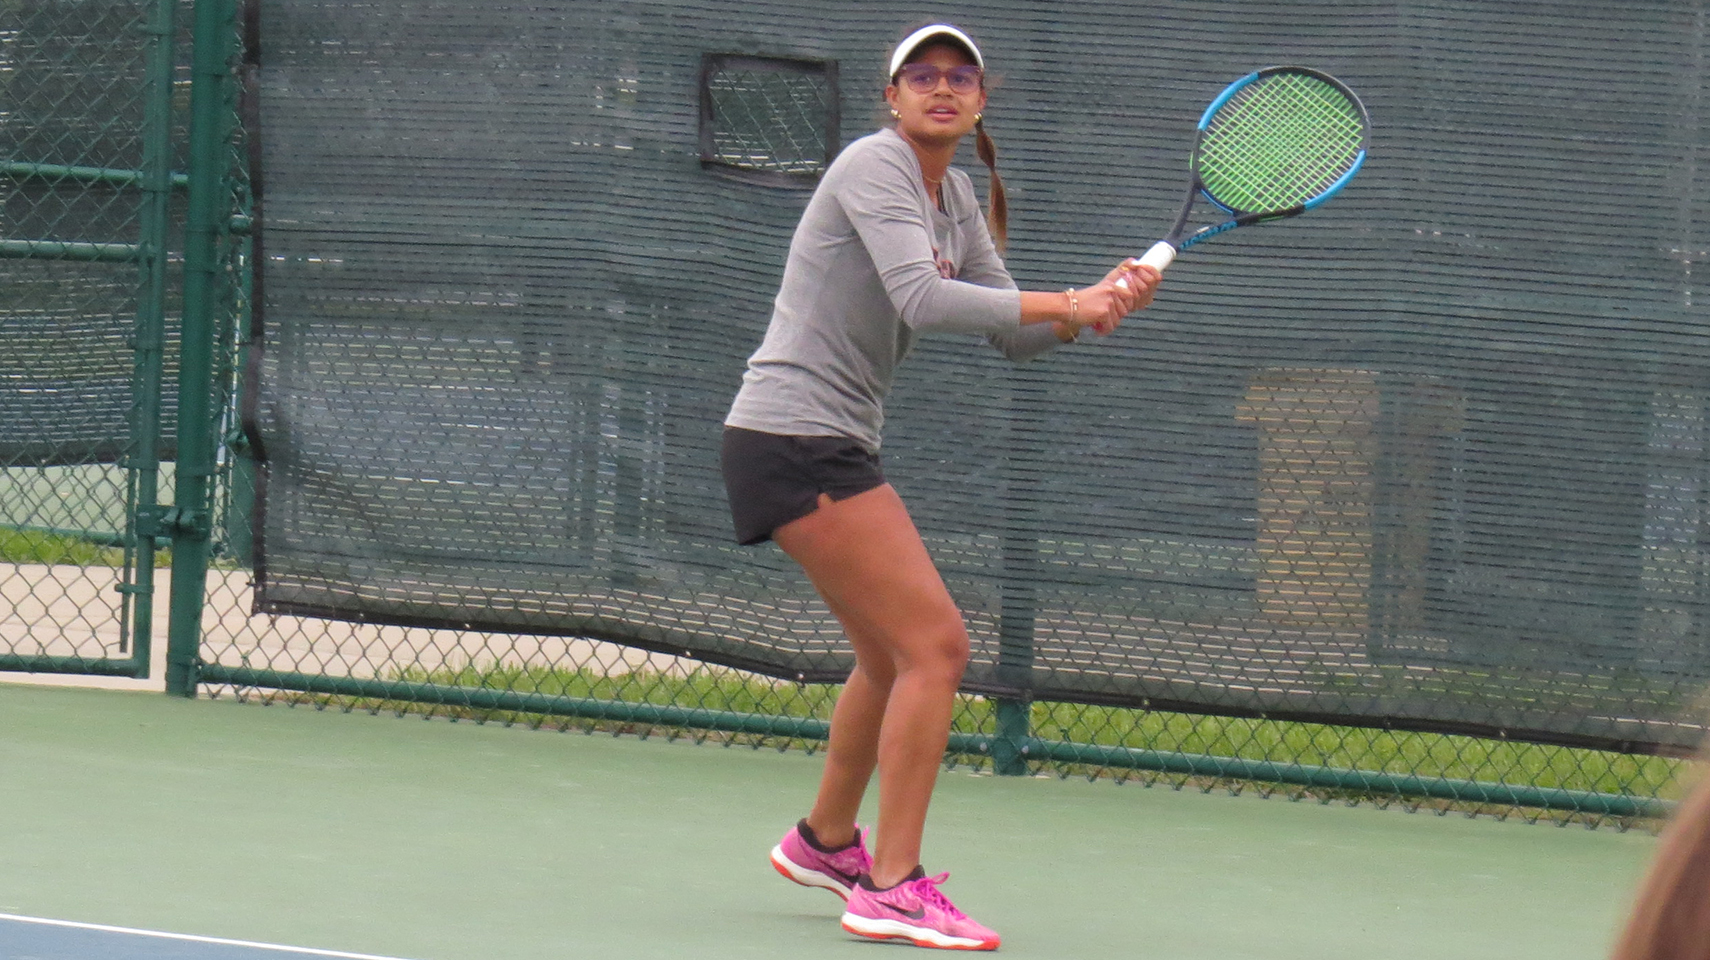 Women's tennis player in grey